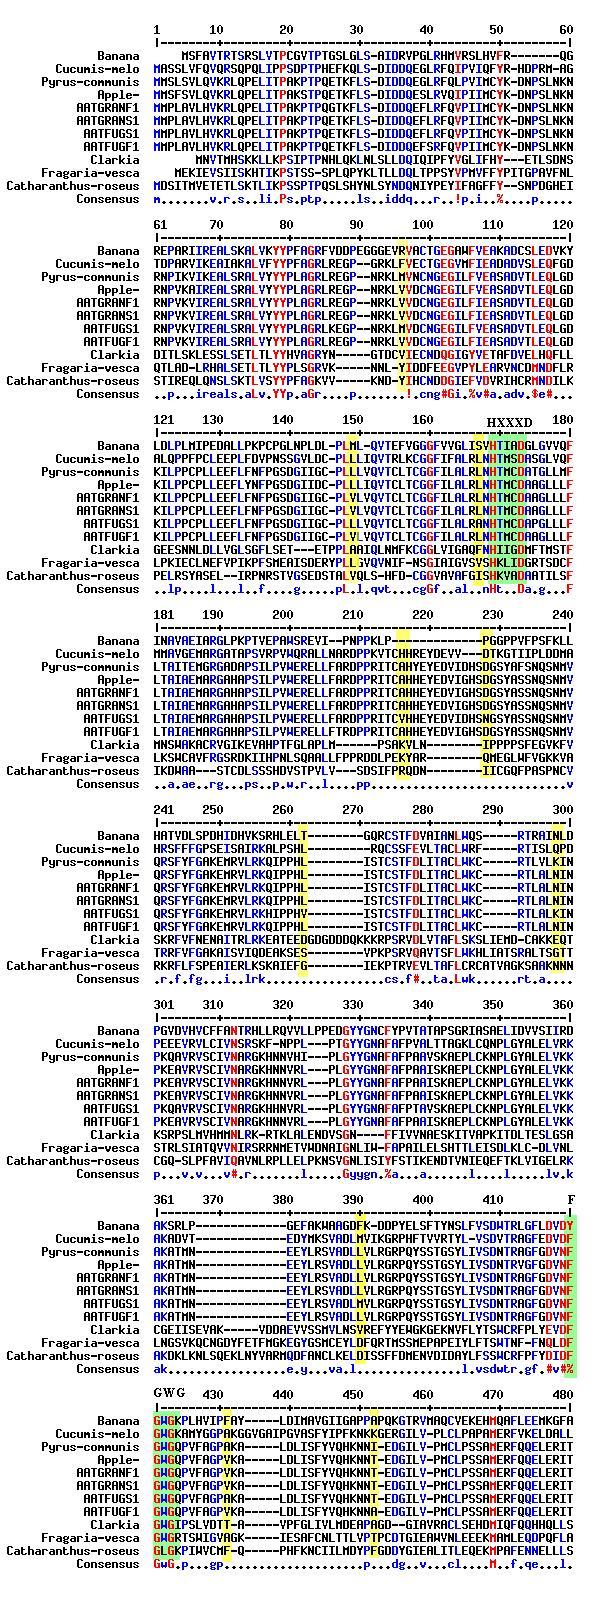 4.4 שונות ברצף חומצות האמינו בגנים שבודדו בהשוואה לAAT פעילים מאורגניזמים שונים. השוואת רצף ח.